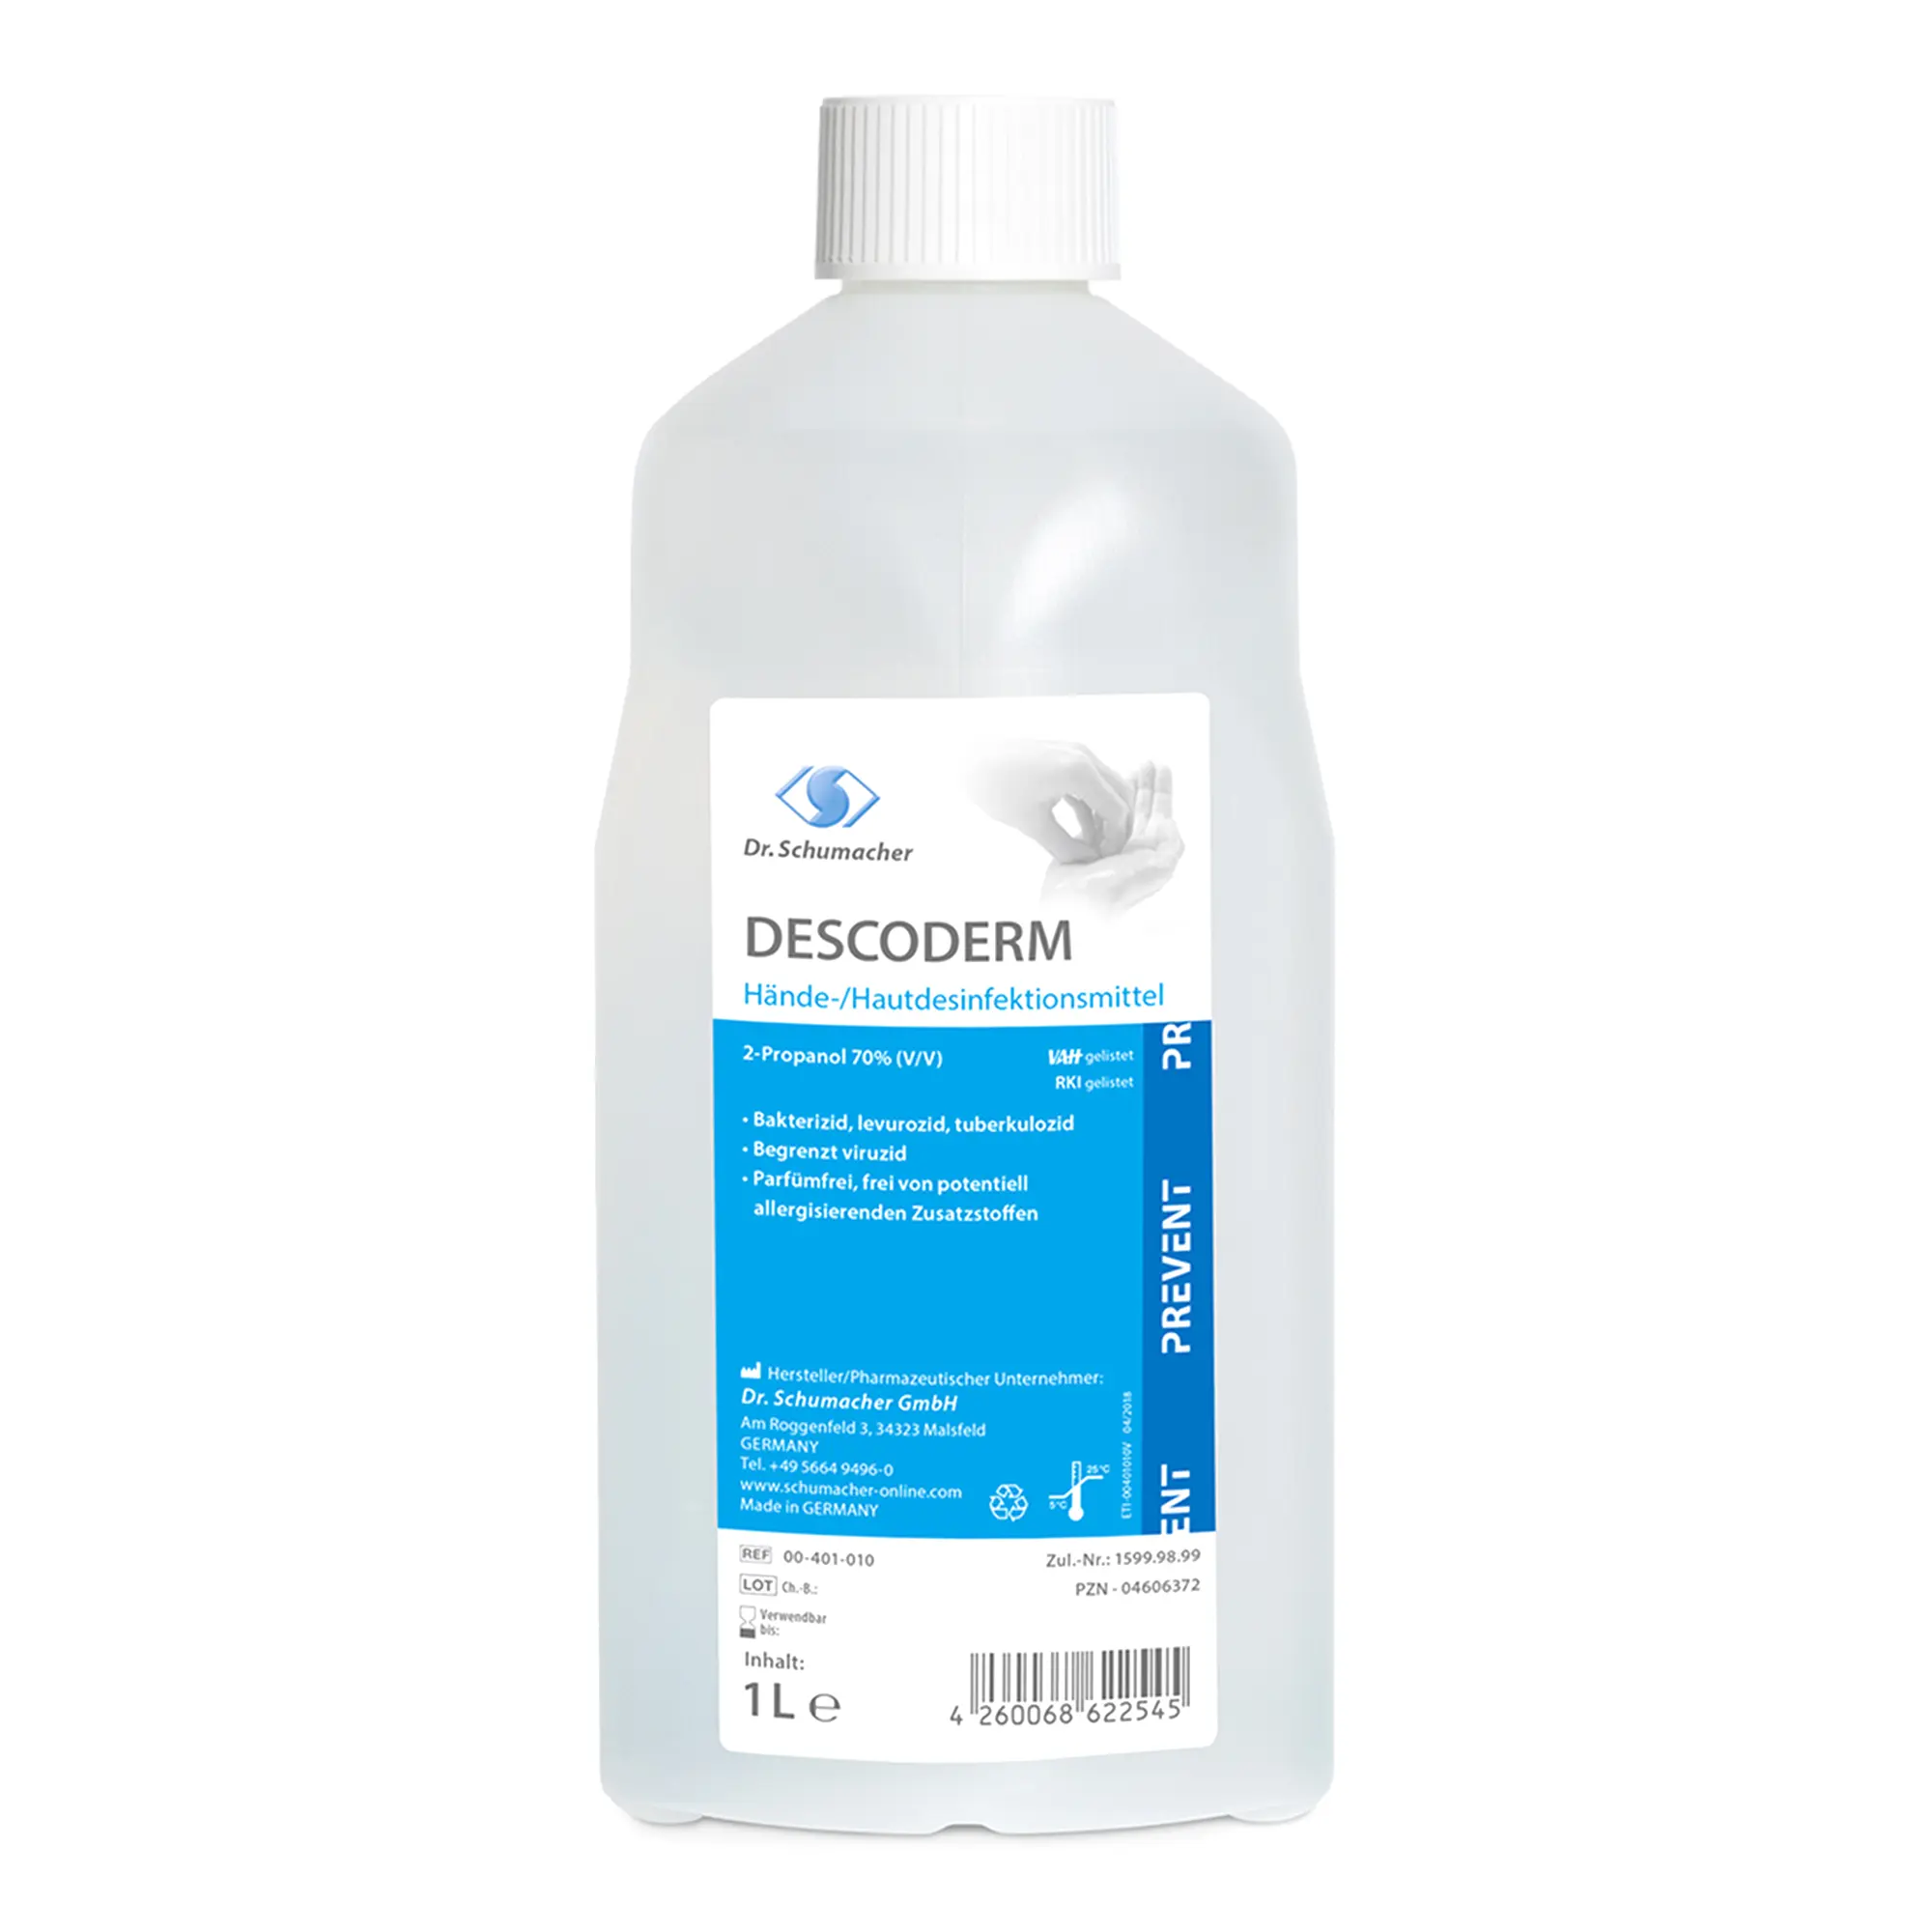 Dr. Schumacher Descoderm alkoholisches Hände- Hautdesinfektionsmittel 1 Liter 00-401-010_1